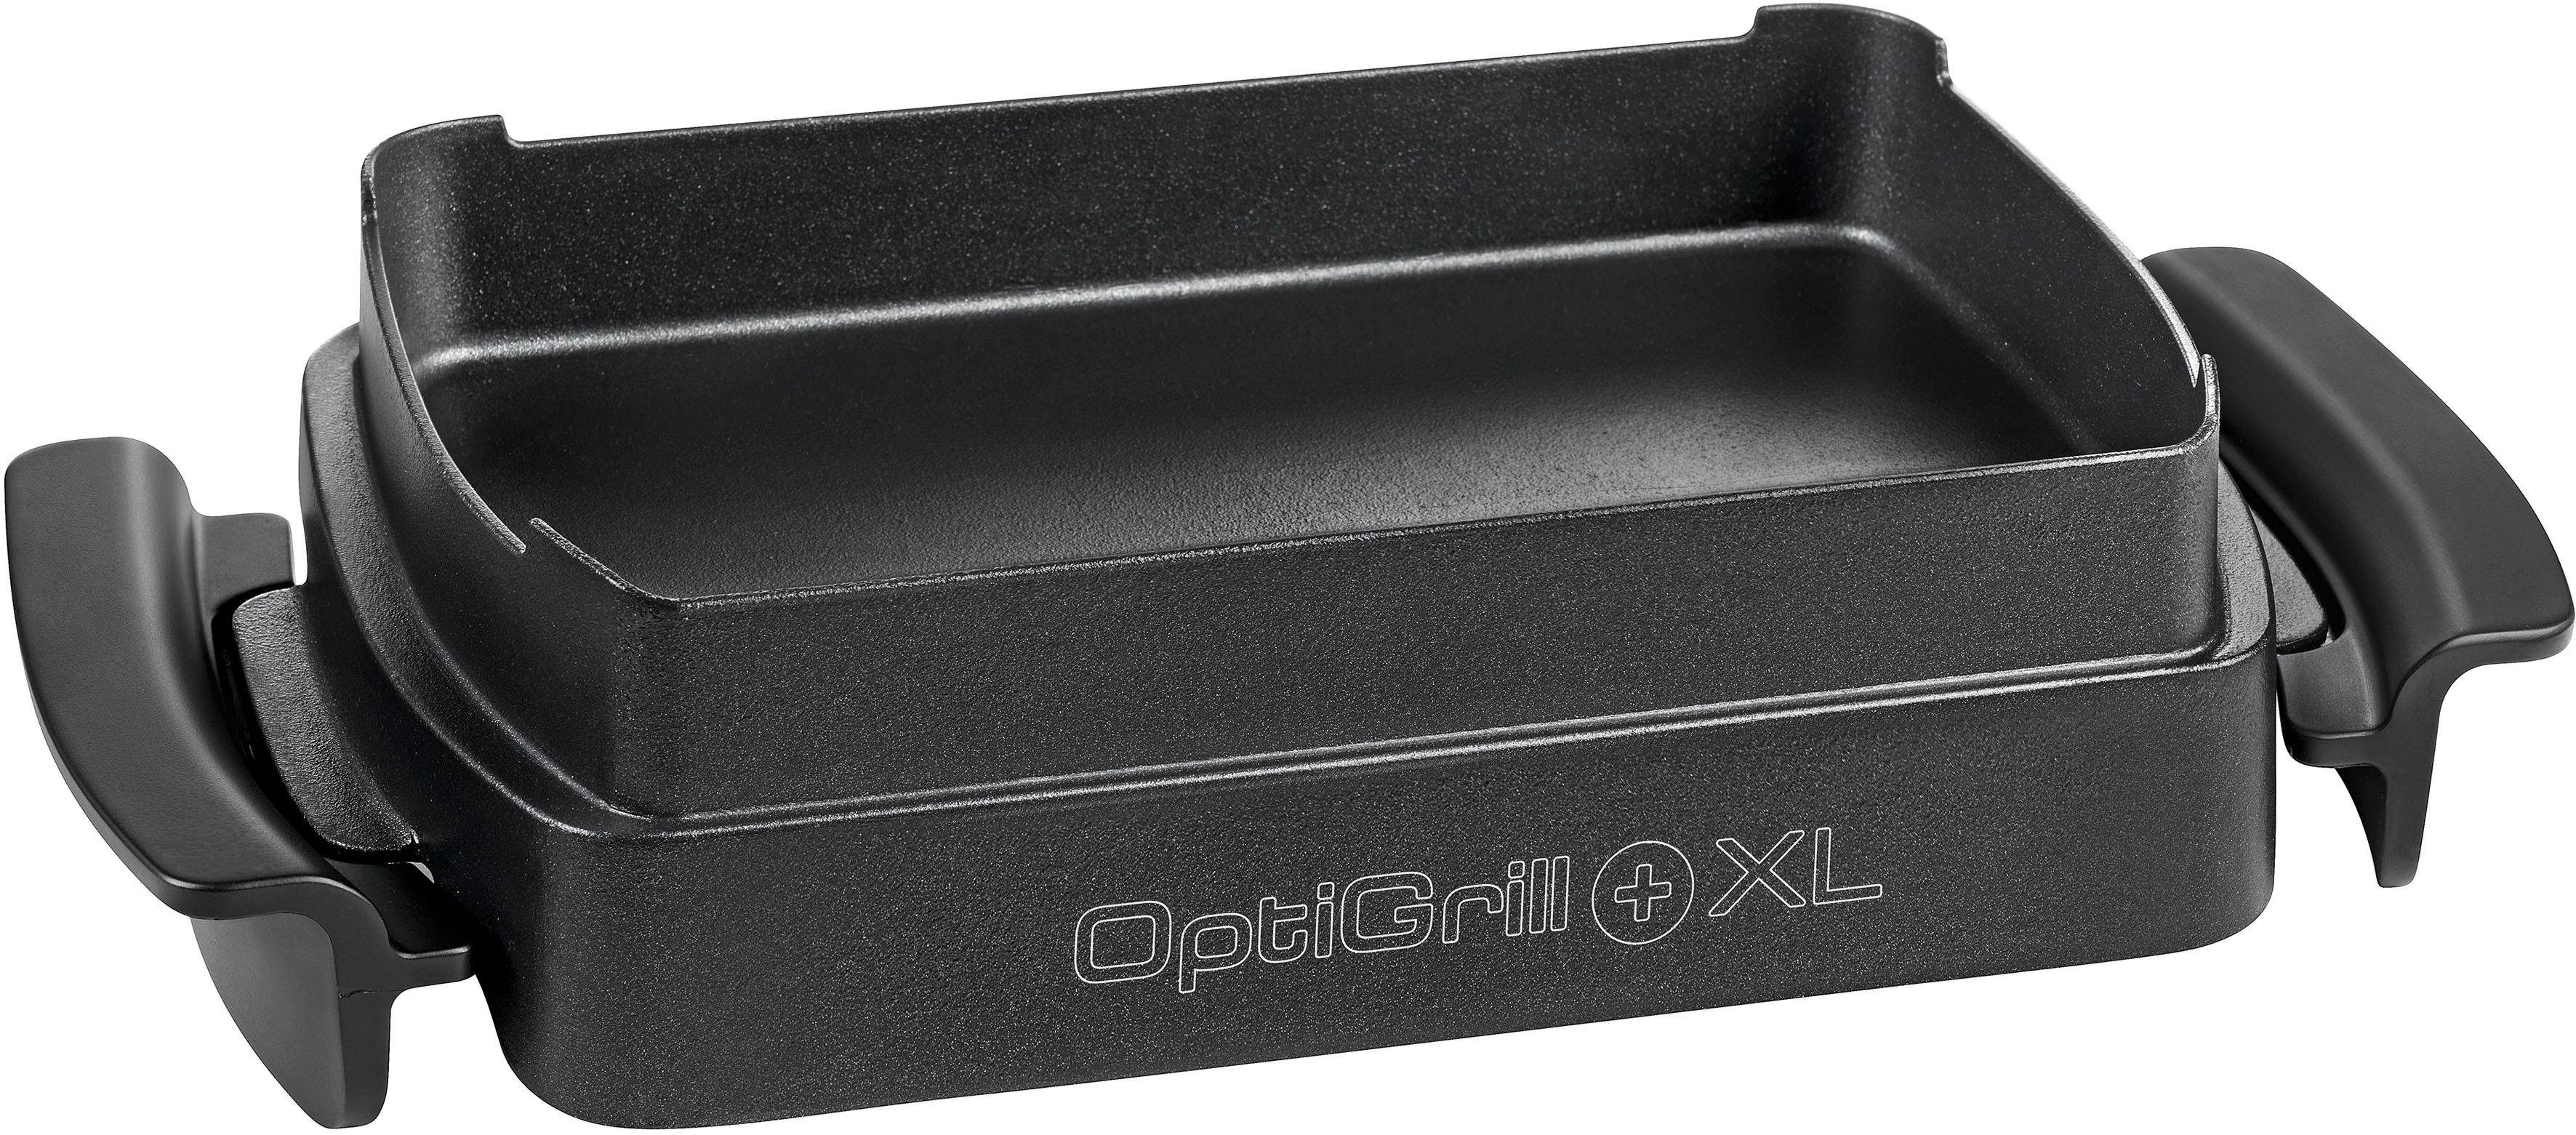 Tefal Backeinsatz XA7268 OptiGrill Snacking & Baking XL, Zubehör für OptiGrill  XL (GC722D) online kaufen | OTTO